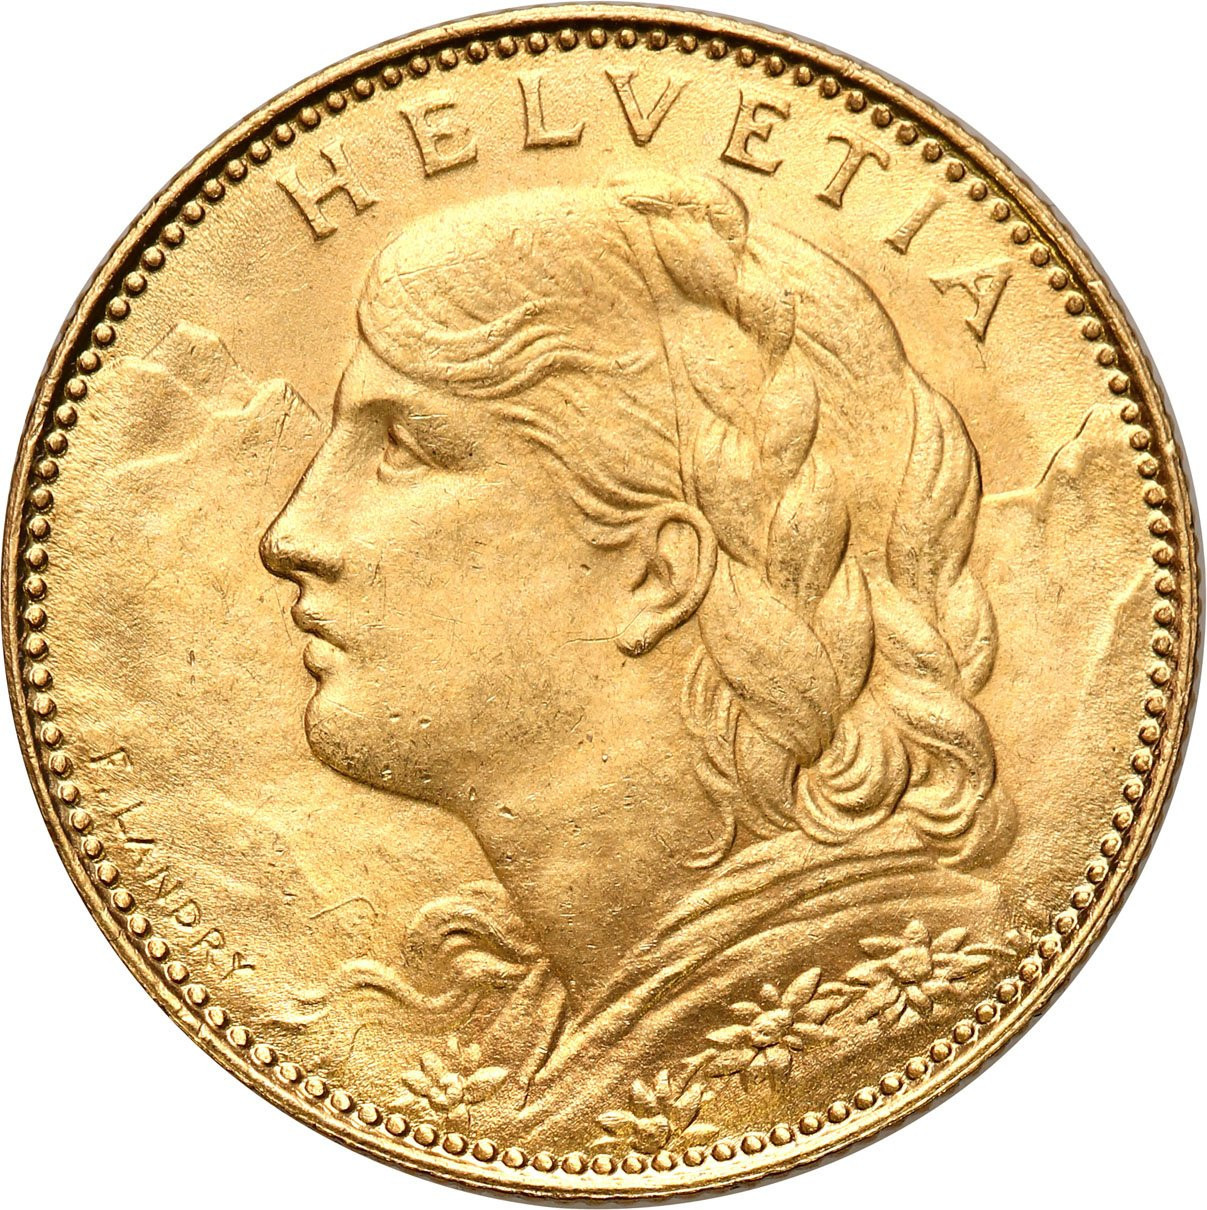 Szwajcaria 10 franków 1922 - PIĘKNE